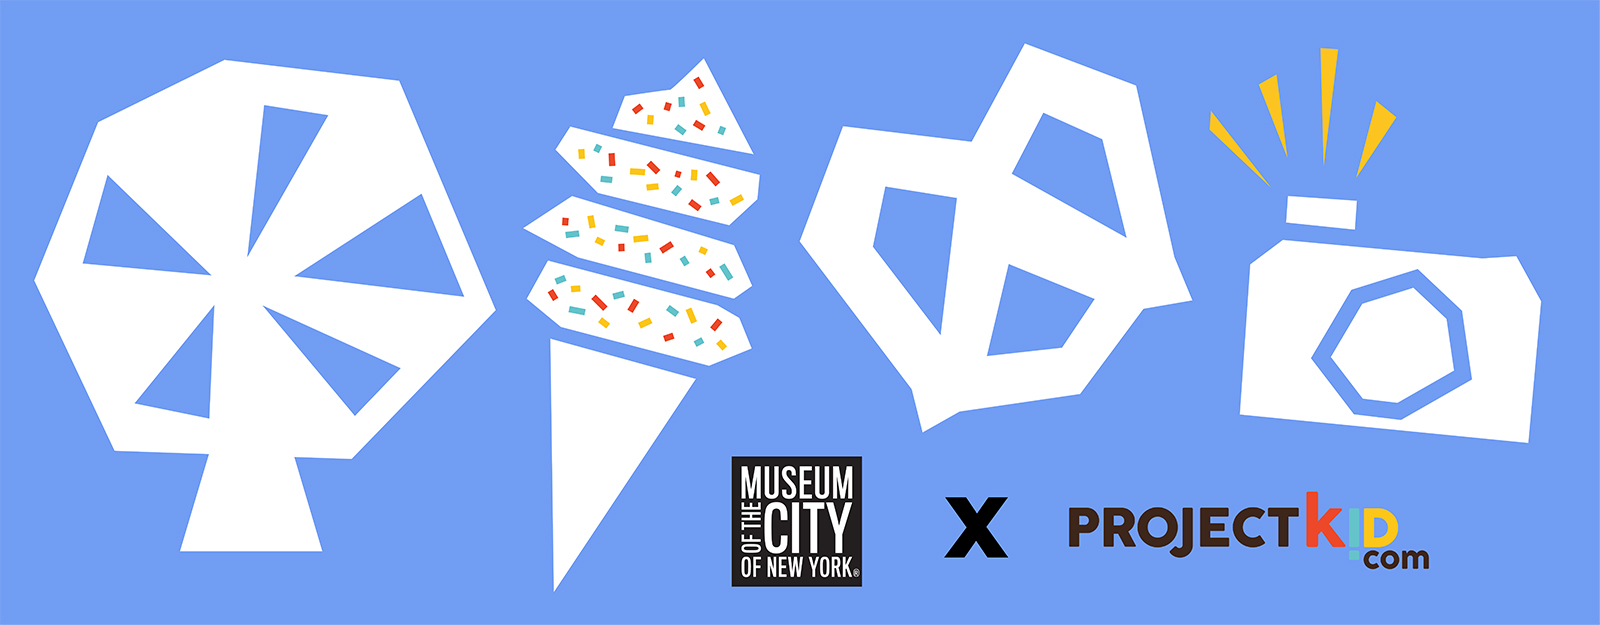 形状的图像-摩天轮，冰淇淋蛋卷，椒盐脆饼和照相机-似乎是用淡蓝色背景上漂浮的纸剪出的，带有纽约市博物馆和Project Kid的徽标。